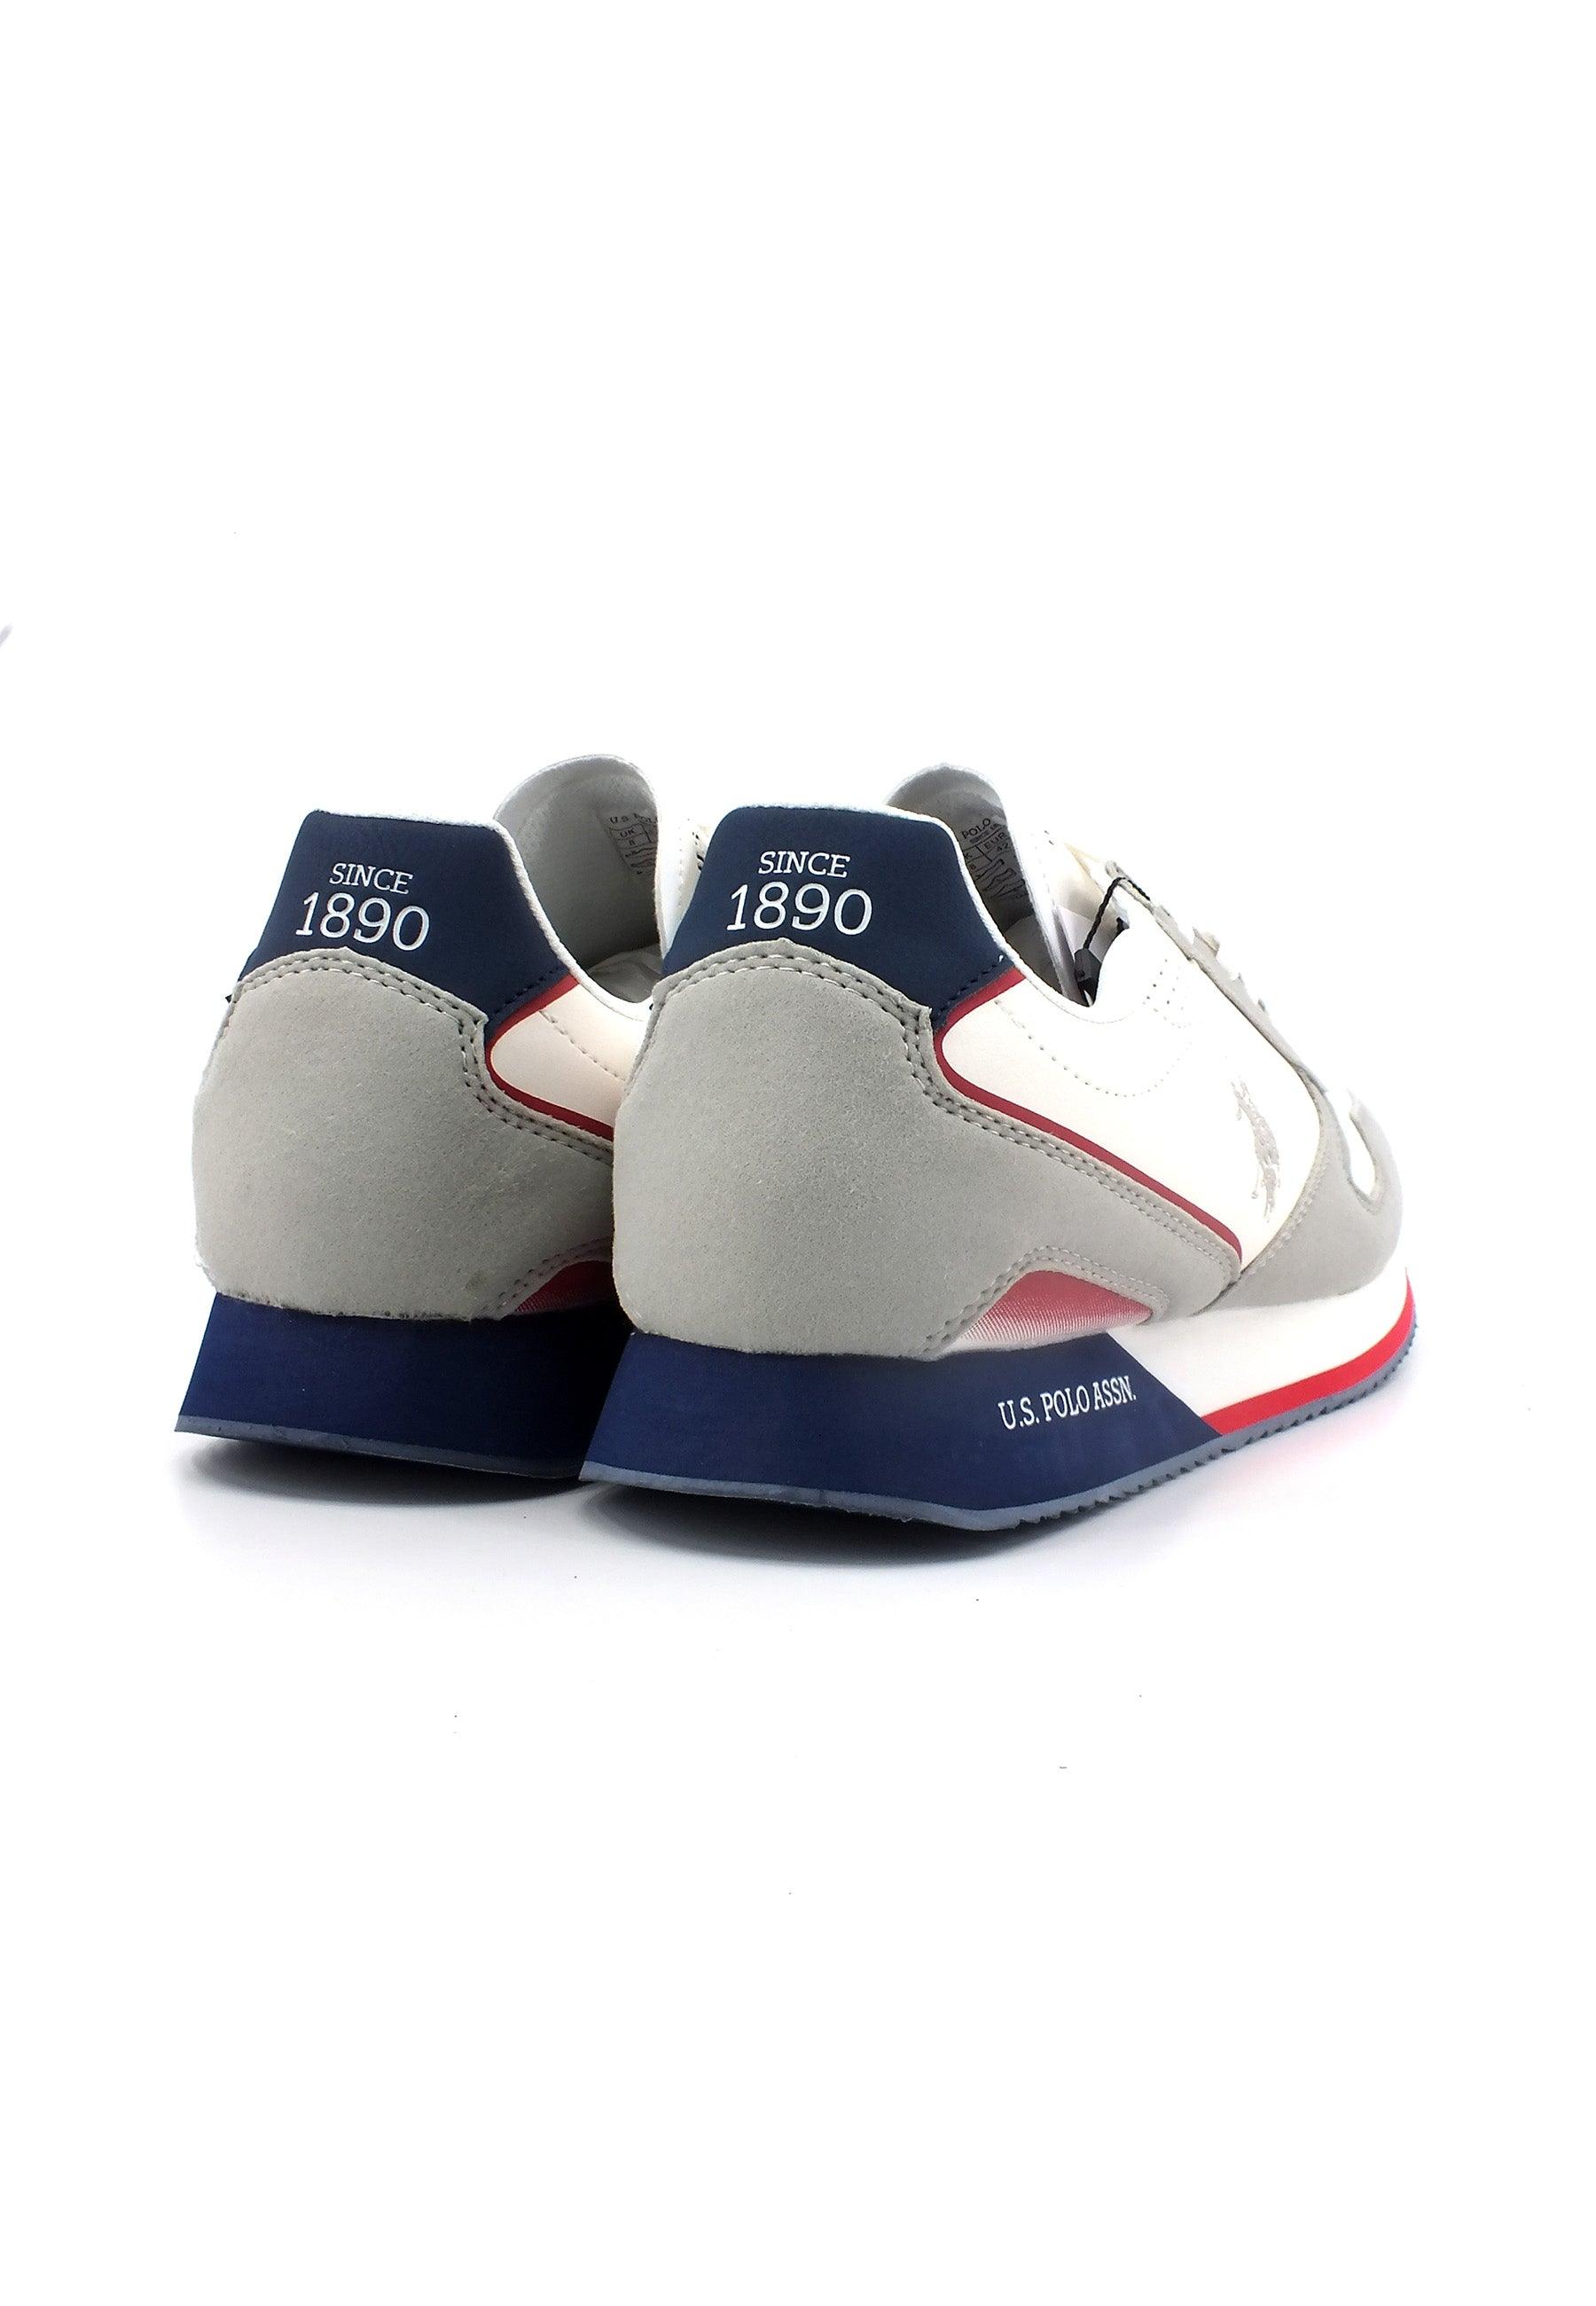 U.S. POLO ASSN. Sneaker Uomo White Blue NOBIL003 - Sandrini Calzature e Abbigliamento